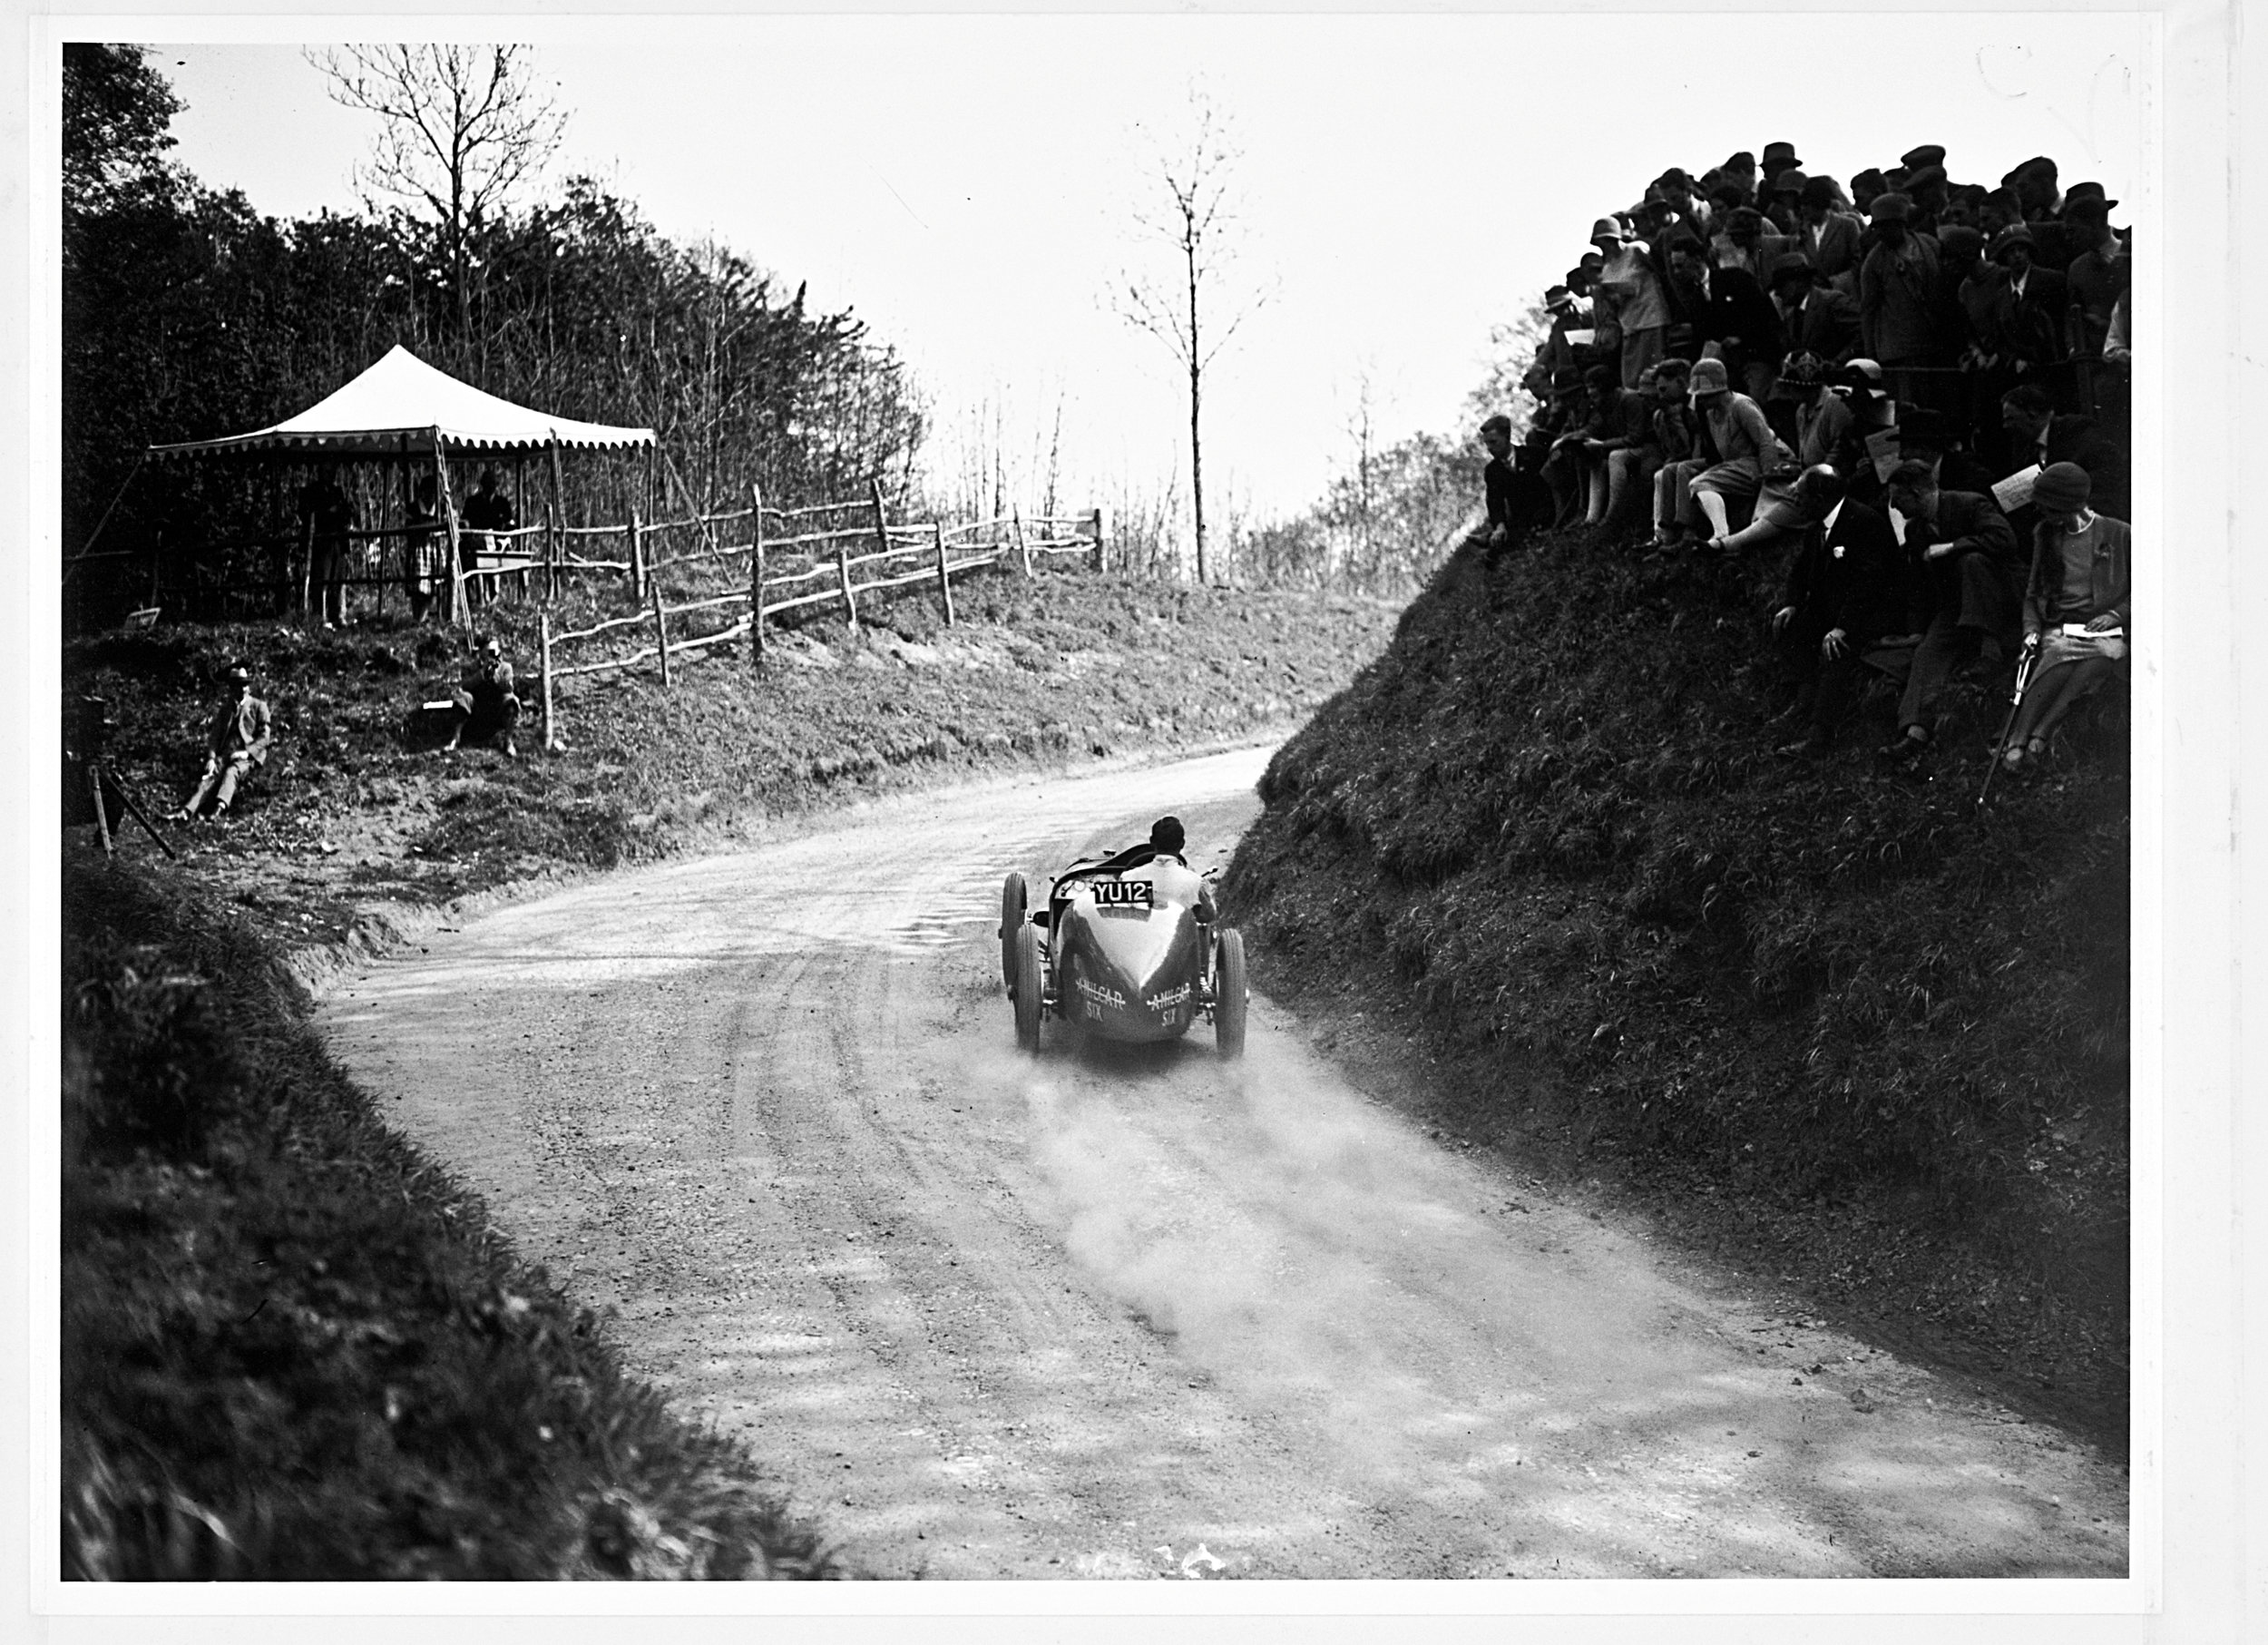 Racing at Shelsley Walsh 1928.